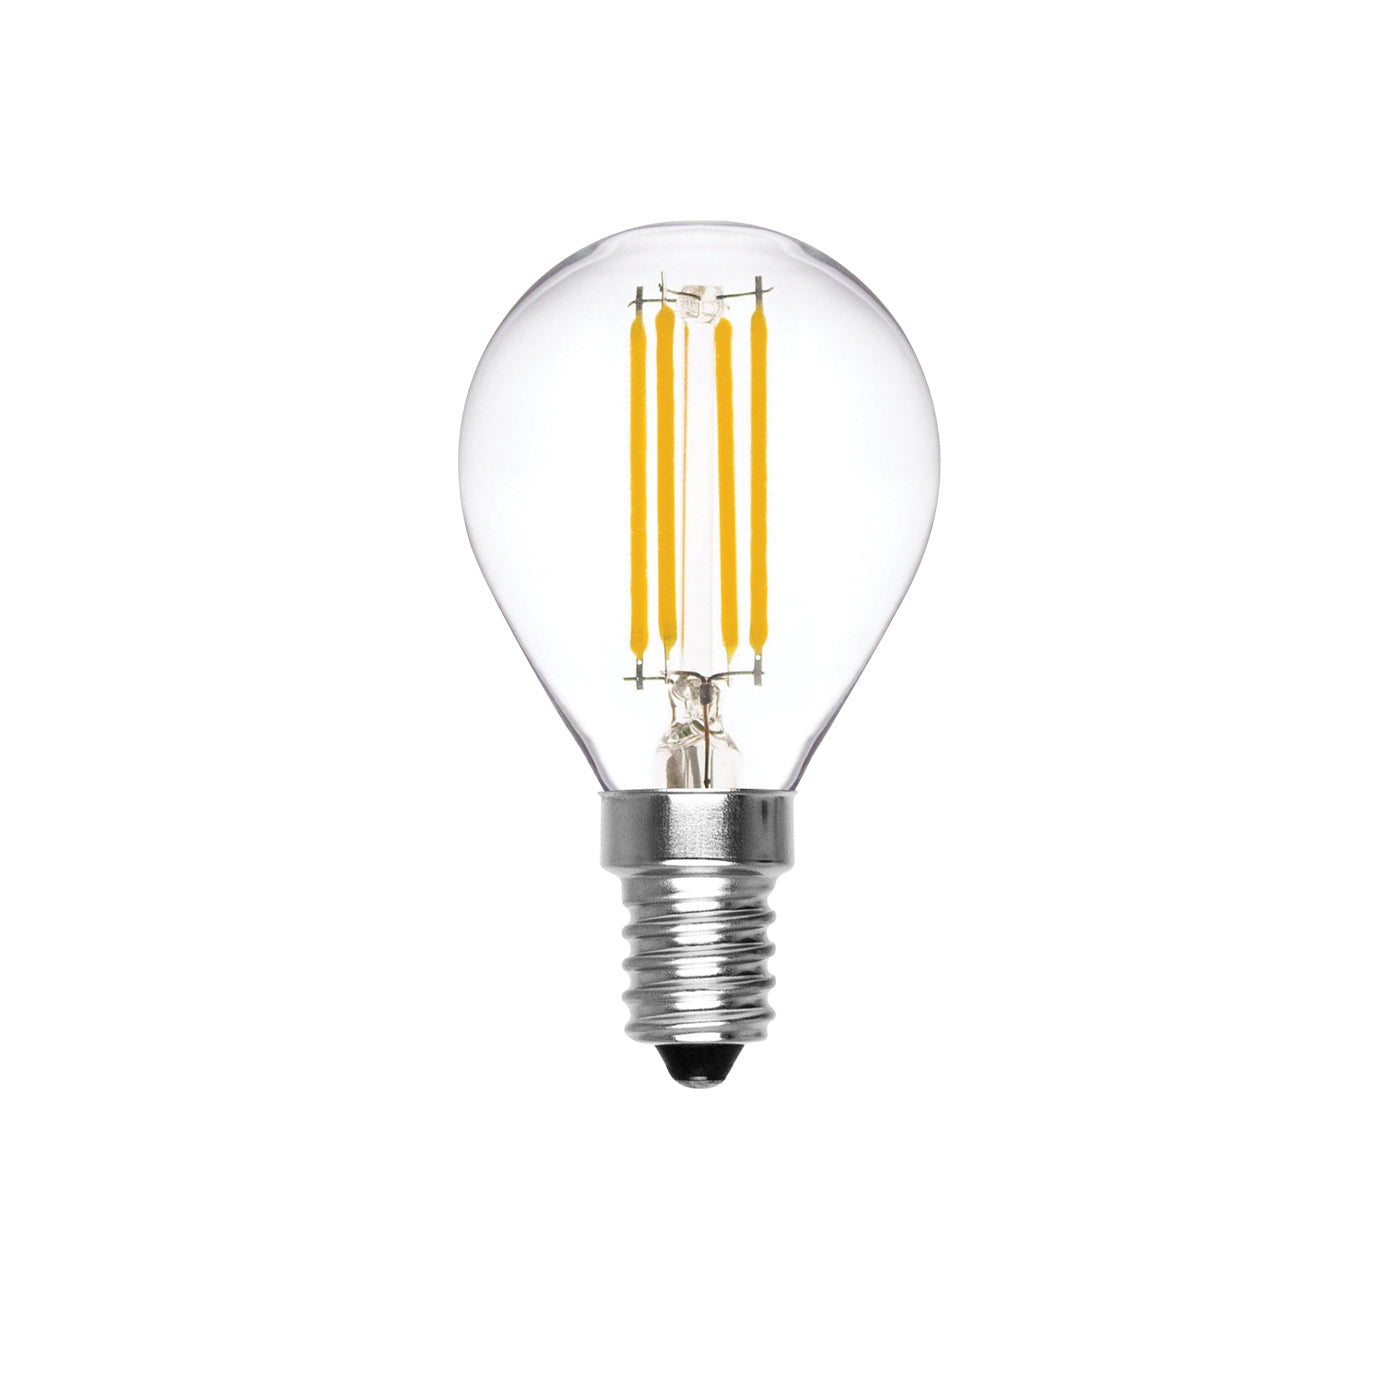 Alcapower Lampadina LED 2700K, lampadina con filamento LED da 6W, dimmerabile e classe energetica A+